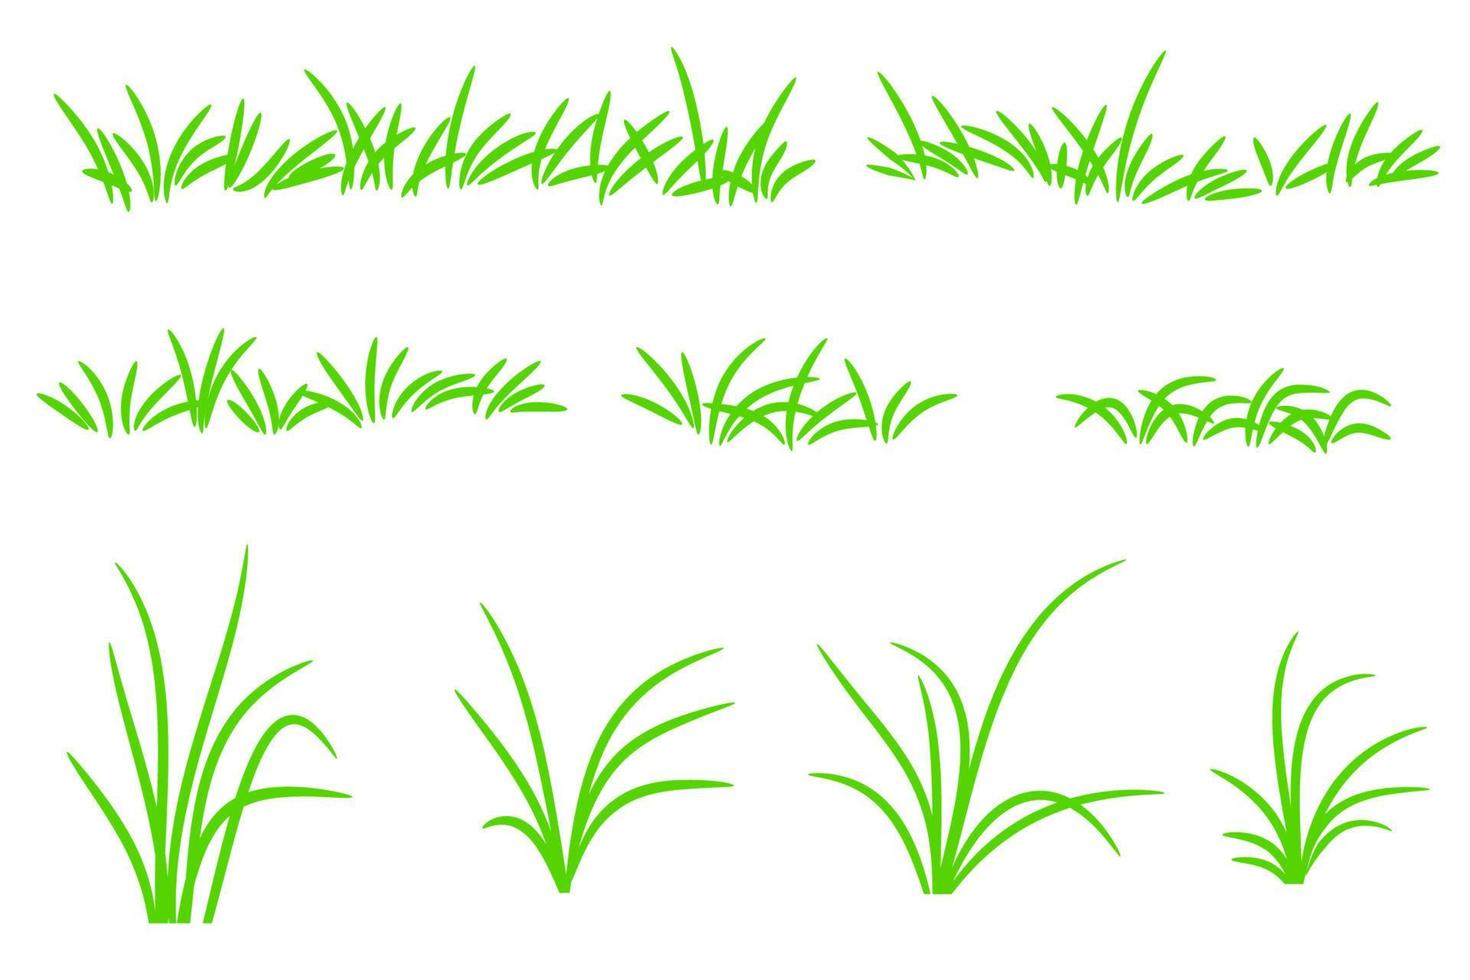 Vektor grünes Gras-Set